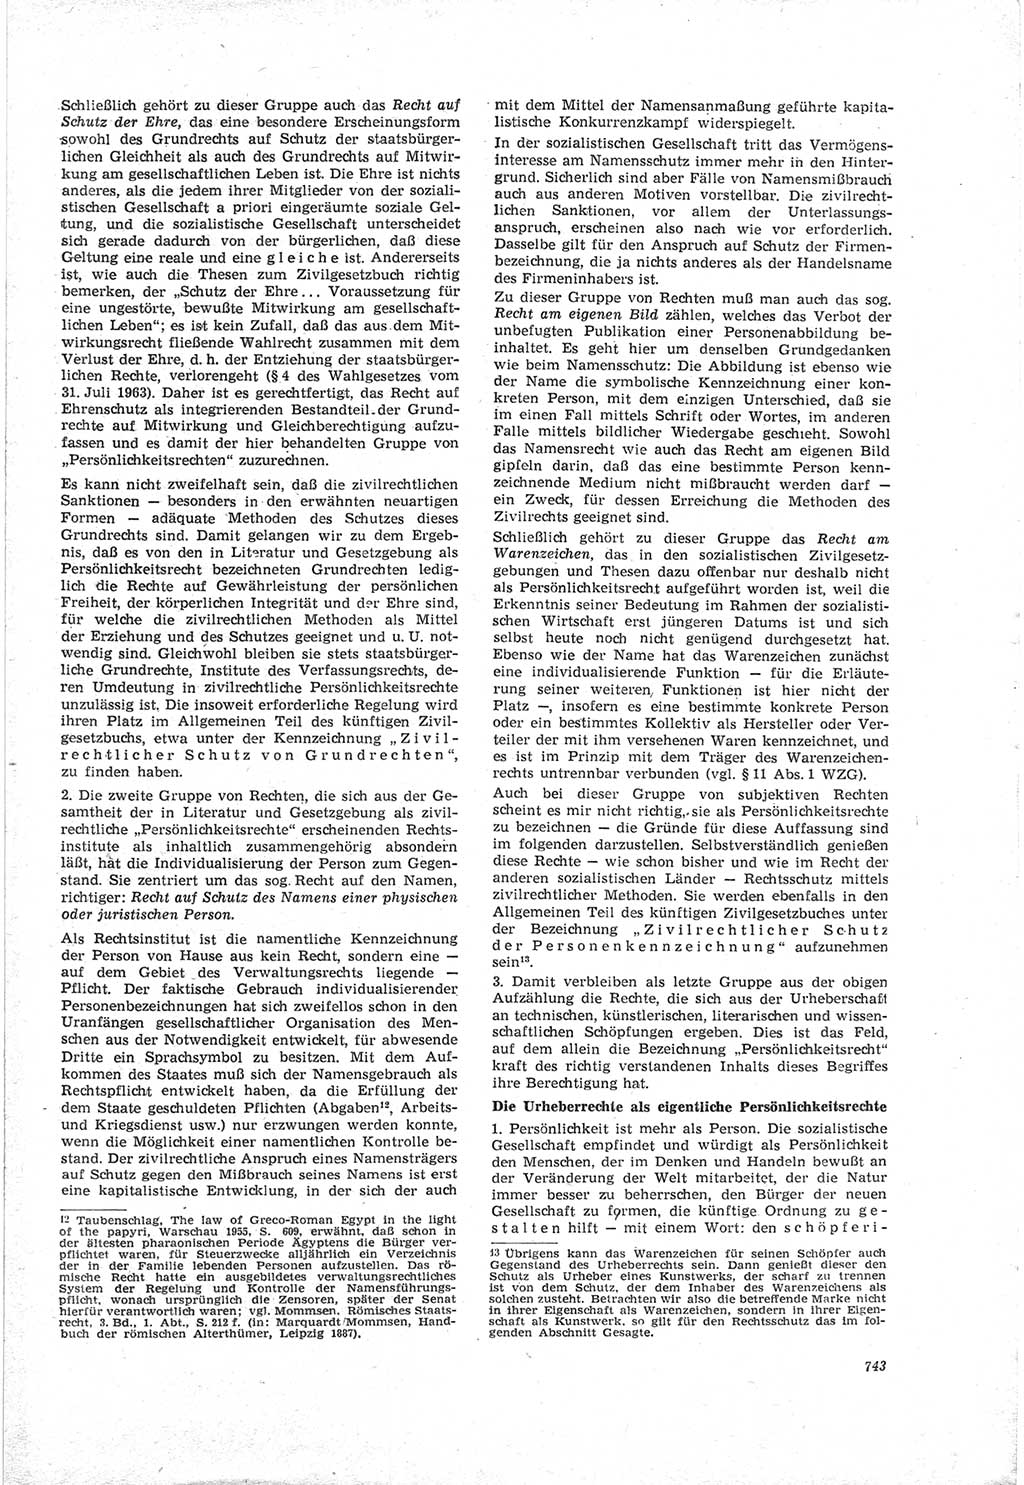 Neue Justiz (NJ), Zeitschrift für Recht und Rechtswissenschaft [Deutsche Demokratische Republik (DDR)], 18. Jahrgang 1964, Seite 743 (NJ DDR 1964, S. 743)